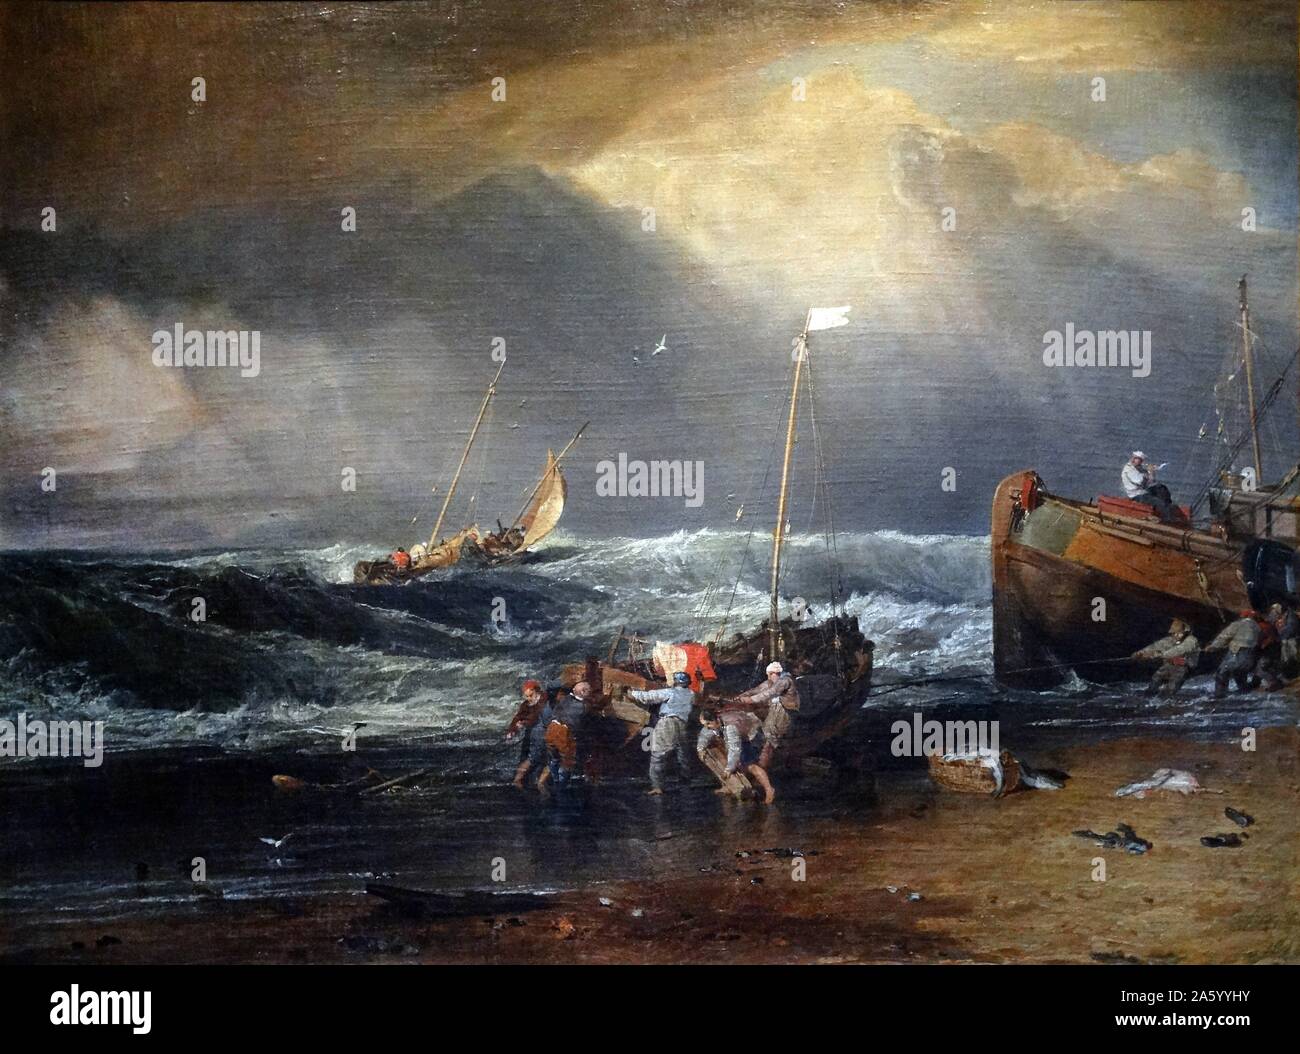 Gemälde mit dem Titel "Küste Szene mit Fischer" von Joseph Mallord William Turner (1775-1851) englische Romantiker Landschaftsmaler. Vom 19. Jahrhundert Stockfoto